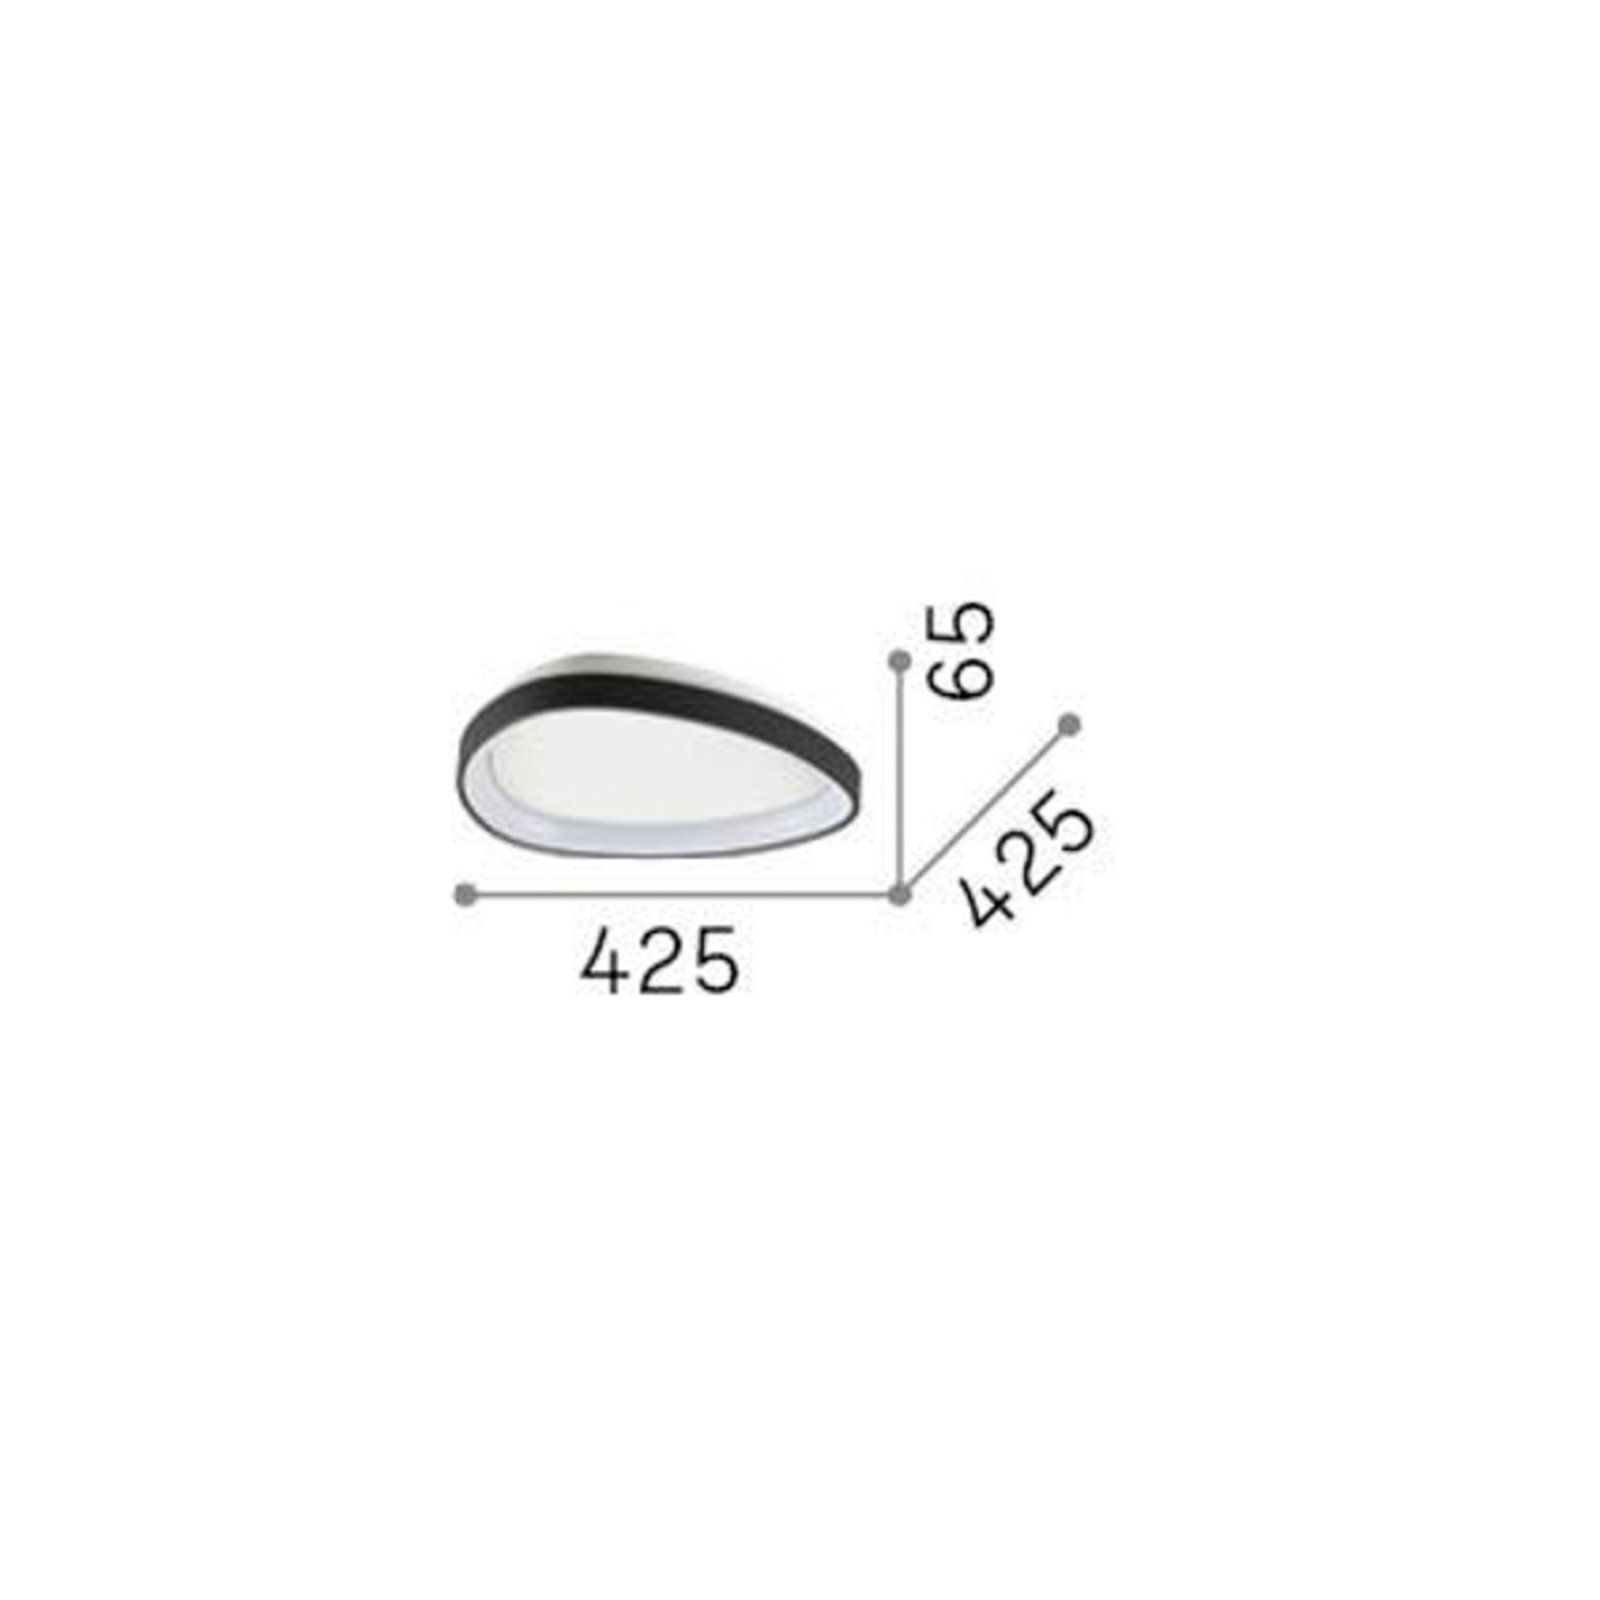 Ideal Lux Gemini taklampa LED, svart, 42,5 cm, på/av